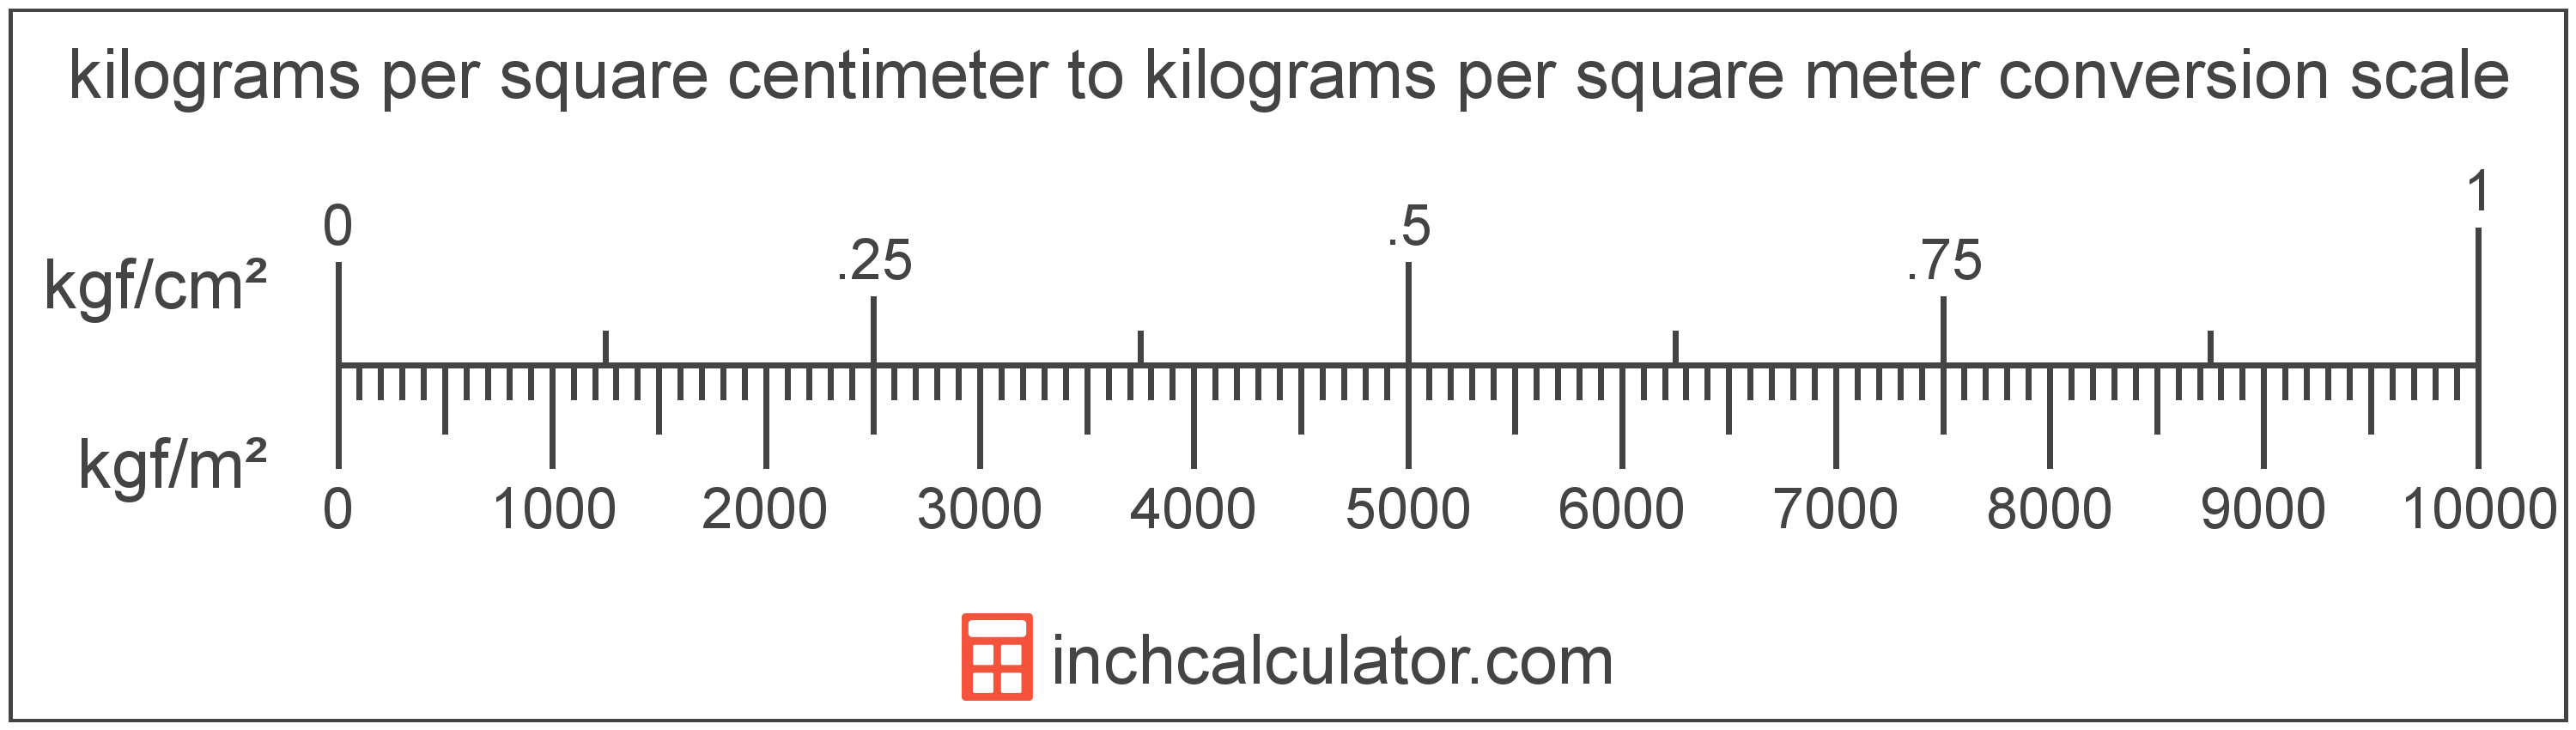 conversion scale showing kilograms per square meter and equivalent kilograms per square centimeter pressure values